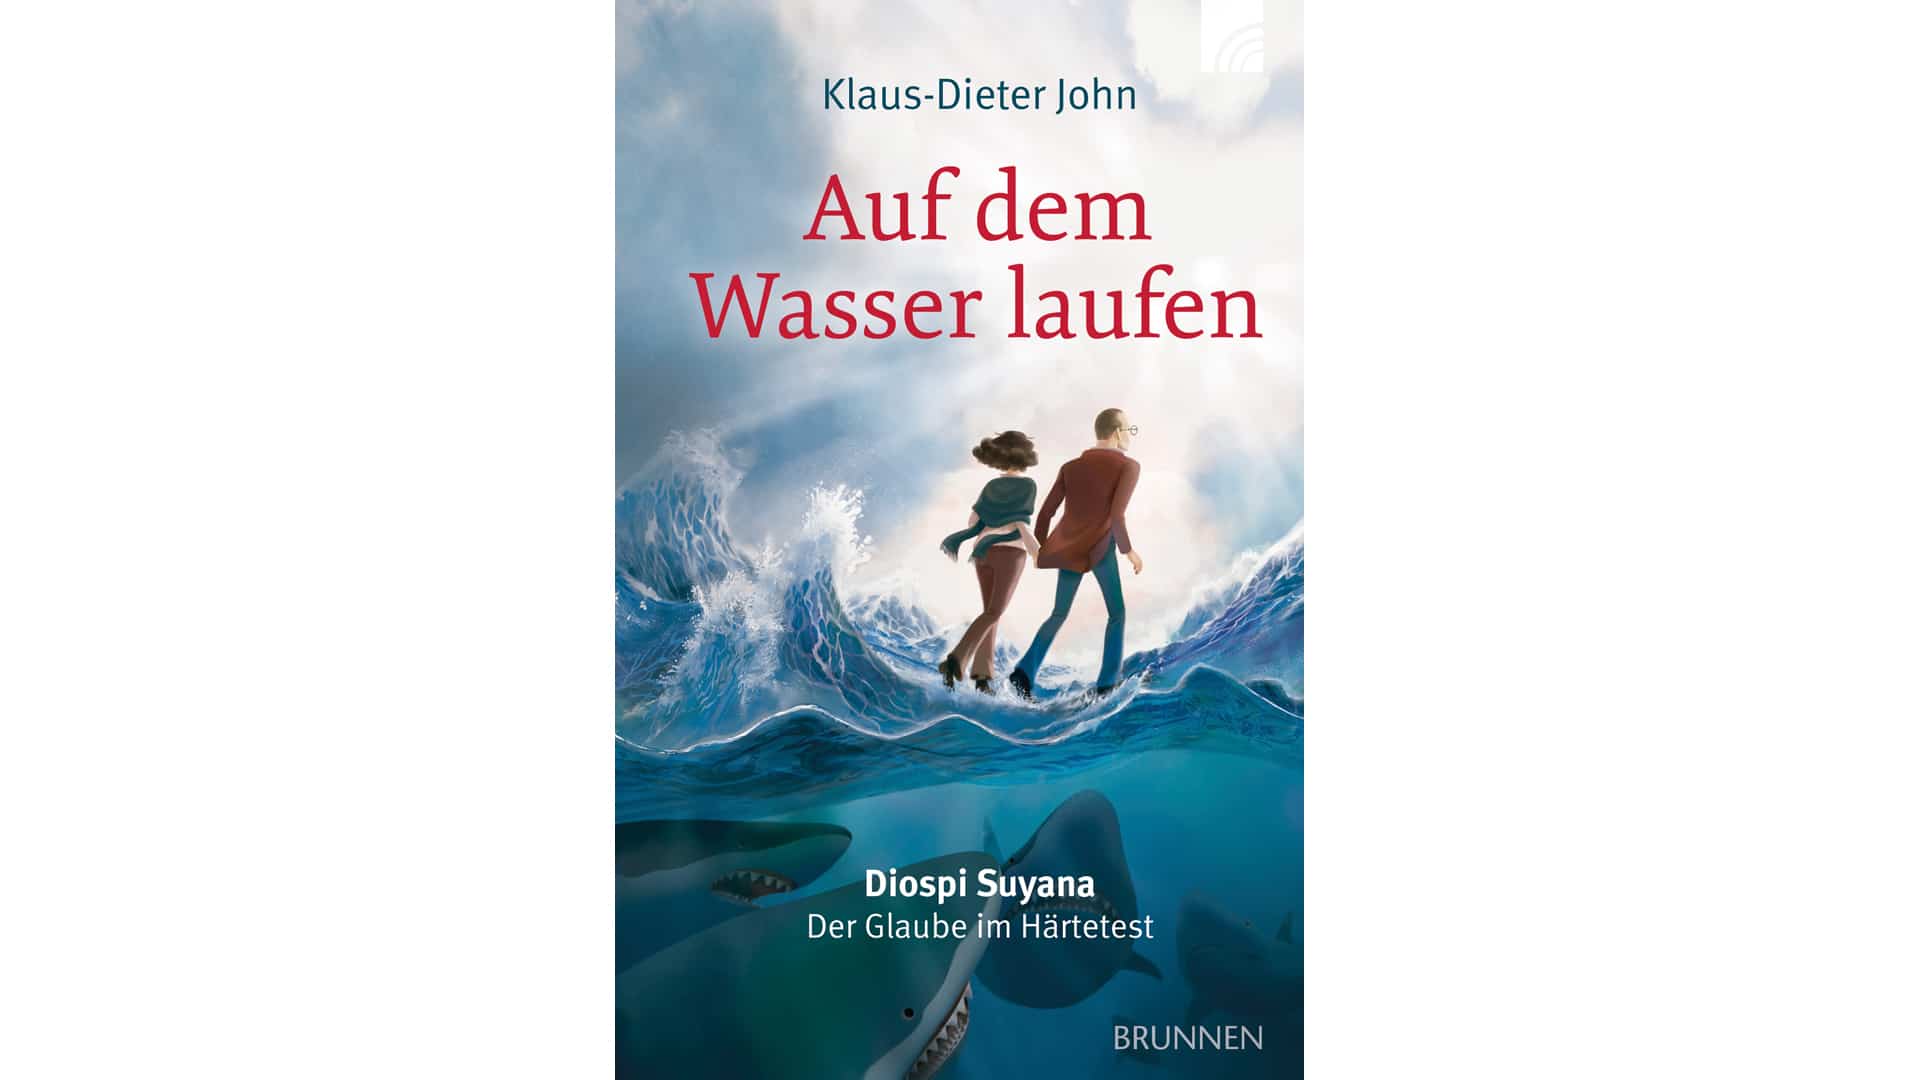 Klaus-Dieter John: „Auf dem Wasser laufen. Diospi Suyana. Der Glaube im Härtetest“, Brunnen, 287 Seiten, 17 Euro, ISBN 9783765507465